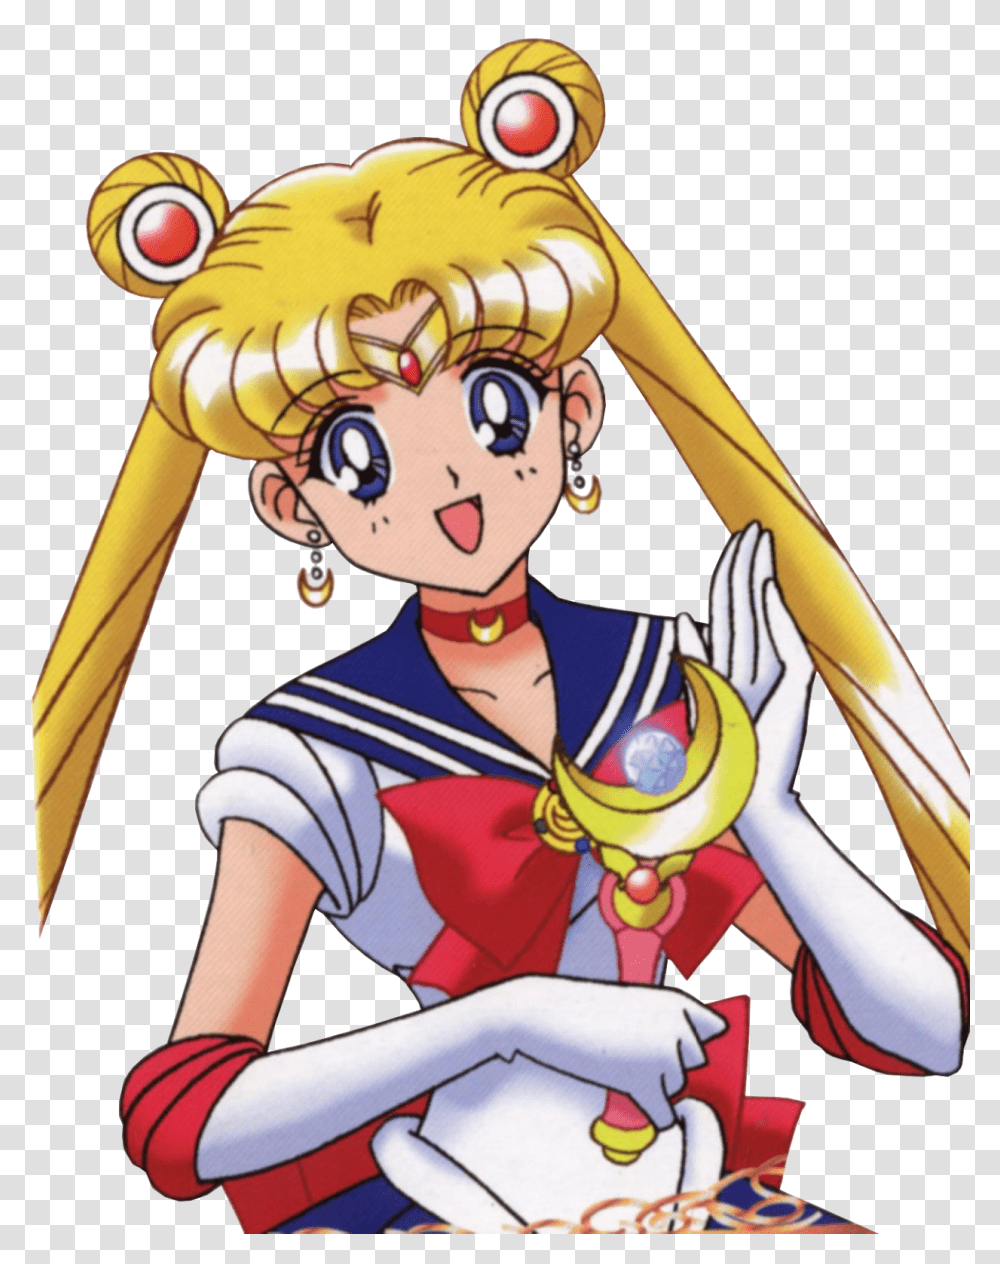 Sailor Moon Sailor Moon Clip Art, Person, Toy, Costume, Comics Transparent Png